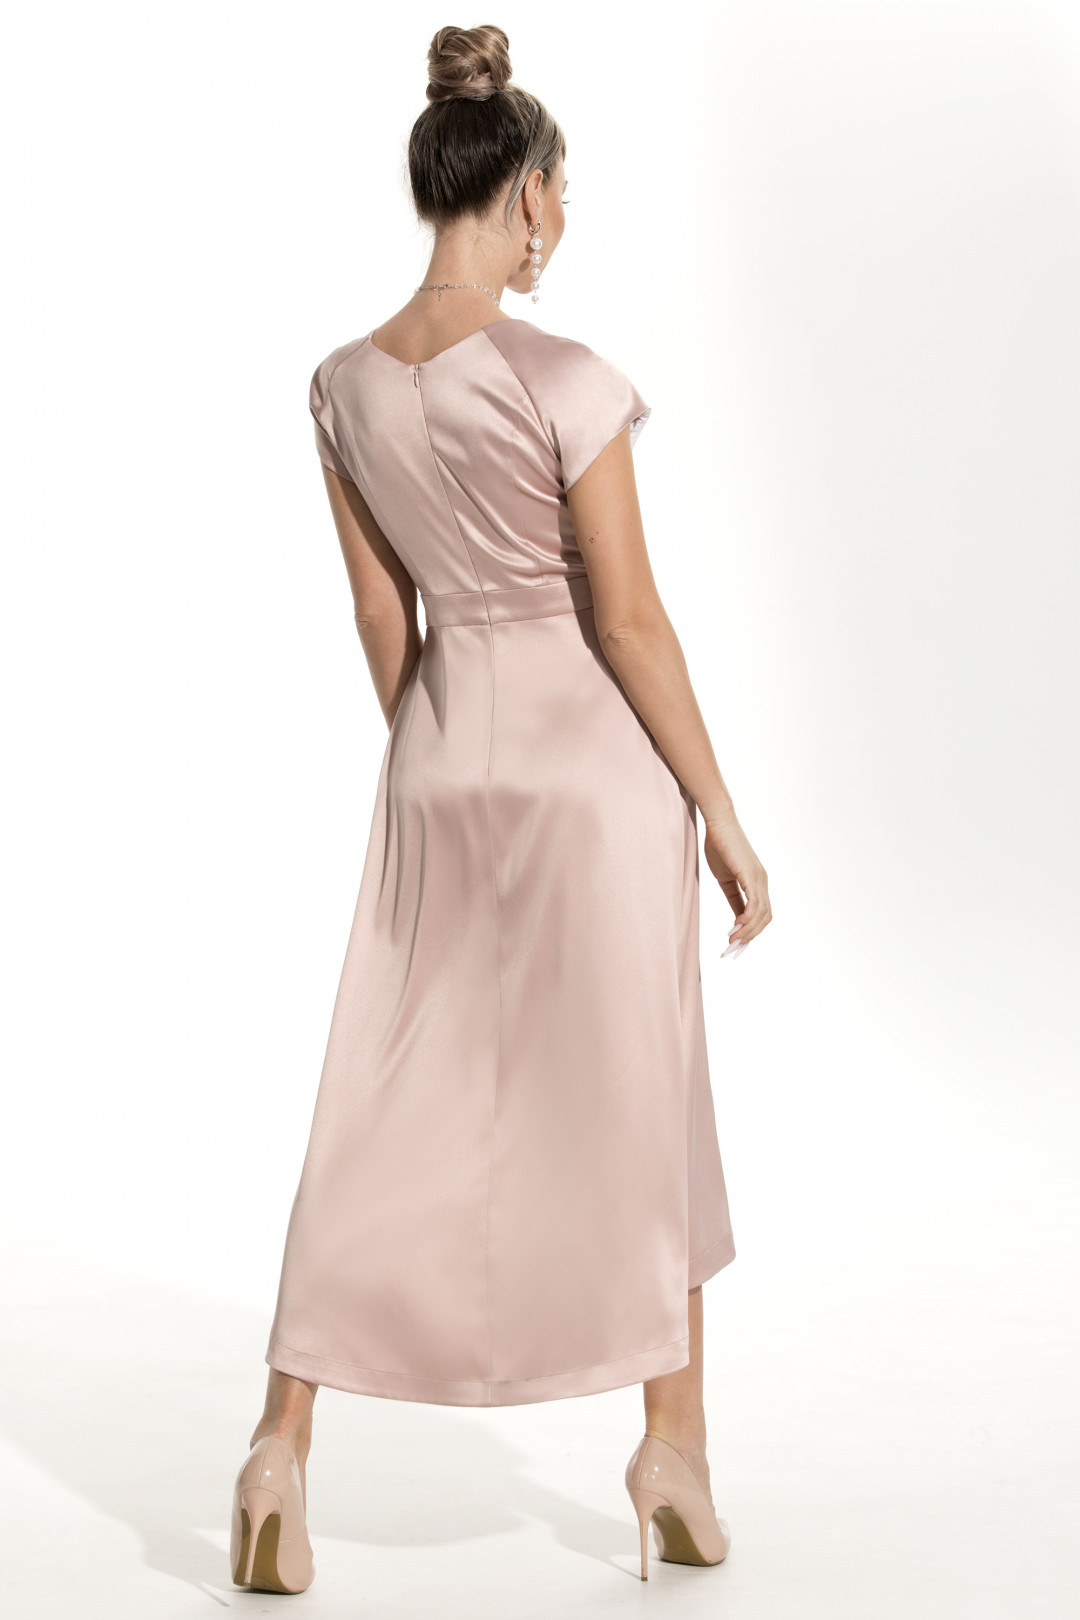 Платье Golden Valley 4666 розовый (н)